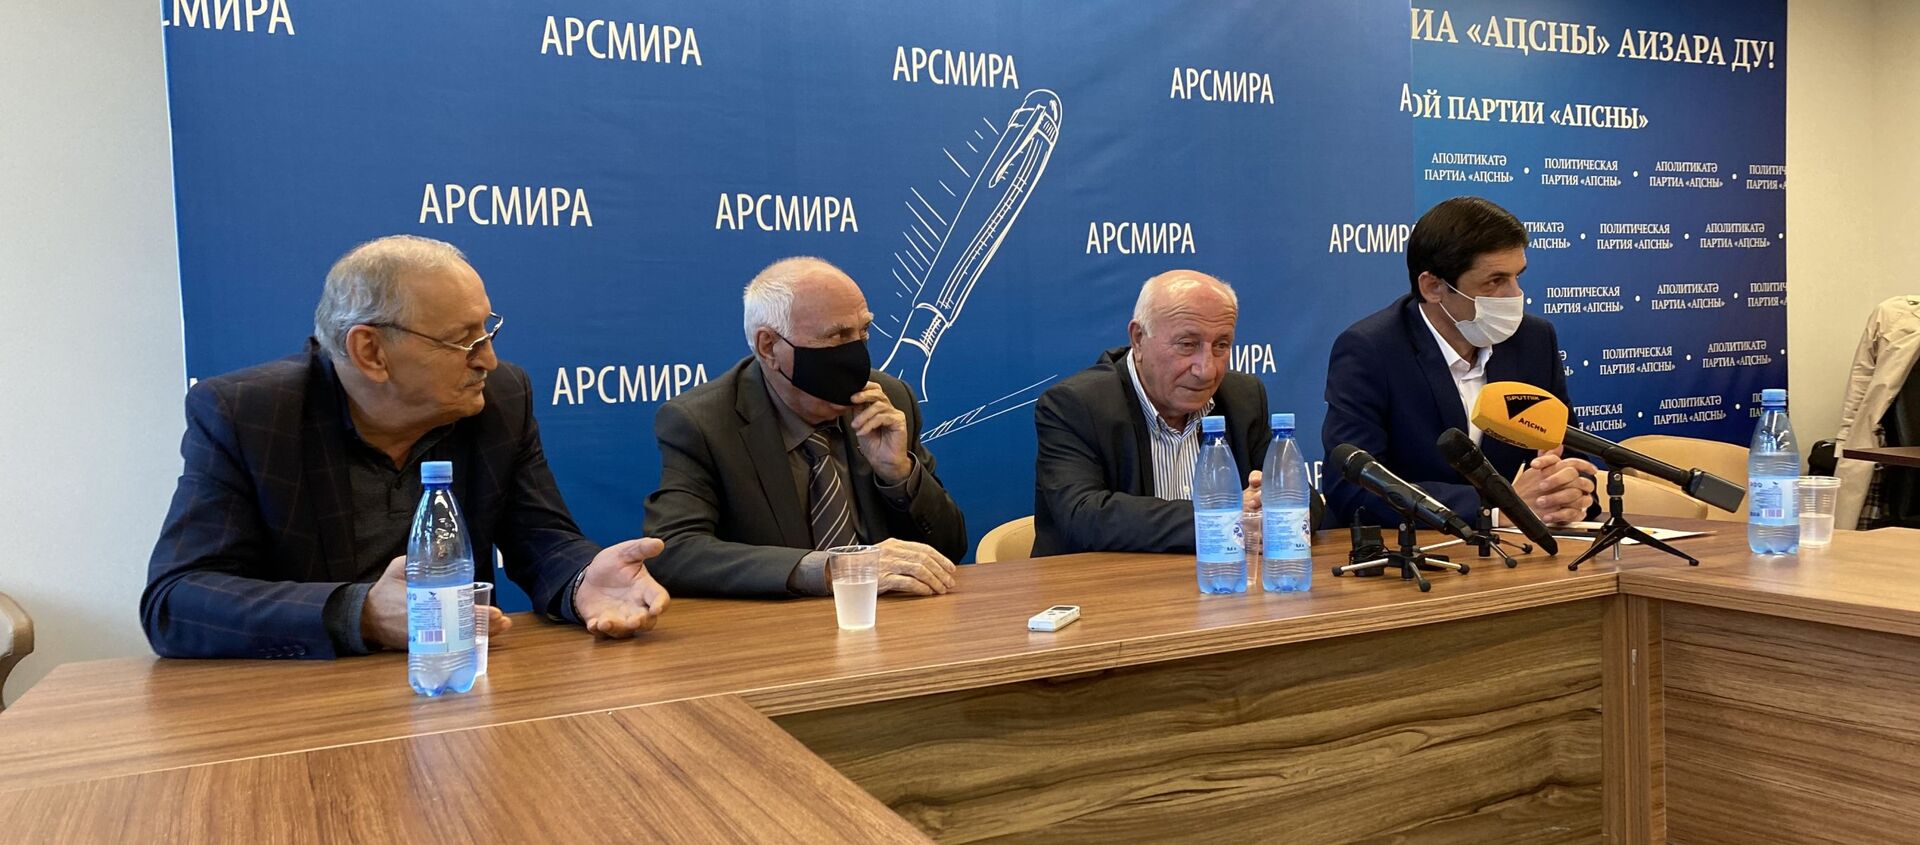 Пресс-конференция ветеранов ОВНА в связи с инцидентом 30 сентября 2021 года - Sputnik Абхазия, 1920, 03.10.2021